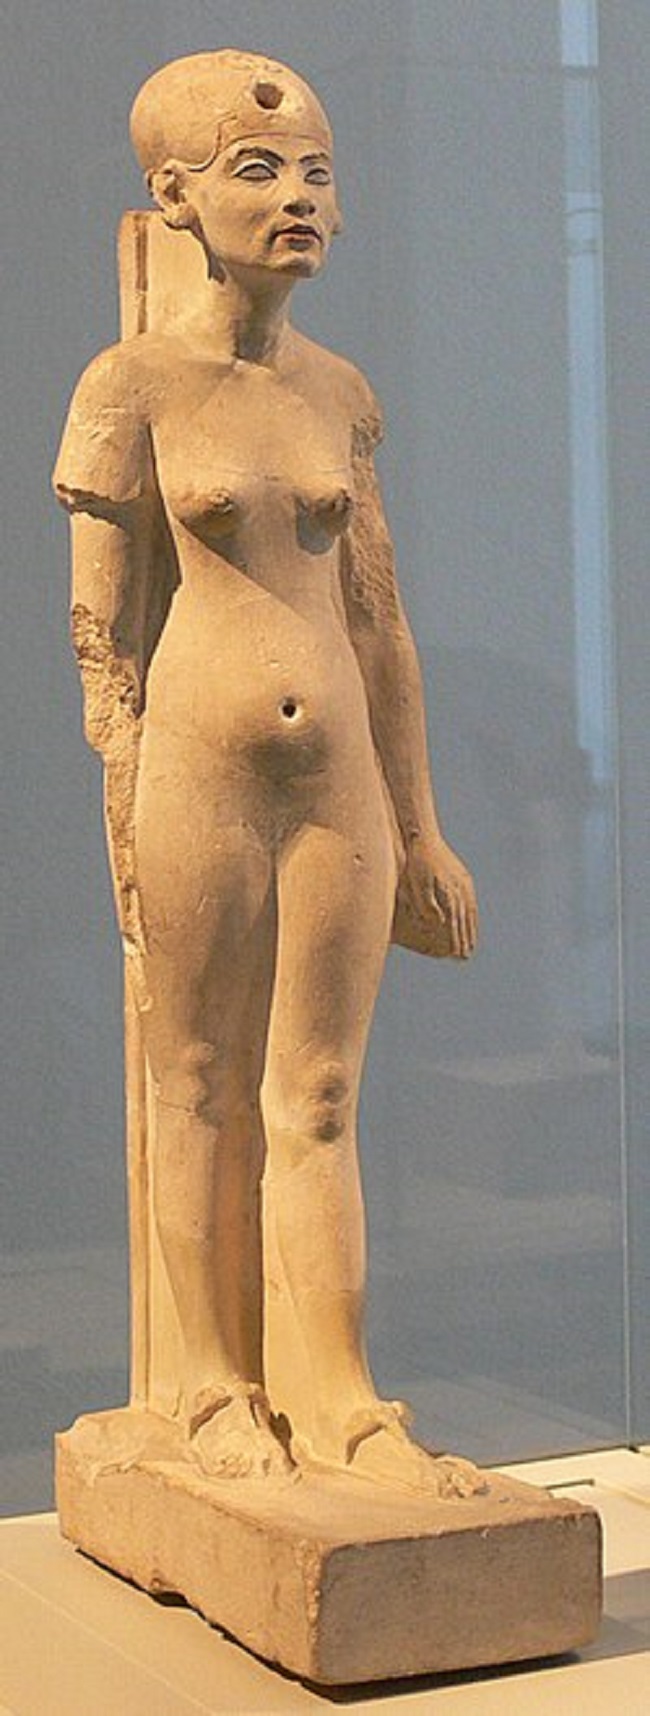 Tìm thấy tượng bán thân một mắt tại thành phố bị lãng quên, nhóm khảo cổ mở ra bí ẩn về nữ Chúa xinh đẹp nhất lịch sử - Ảnh 3.